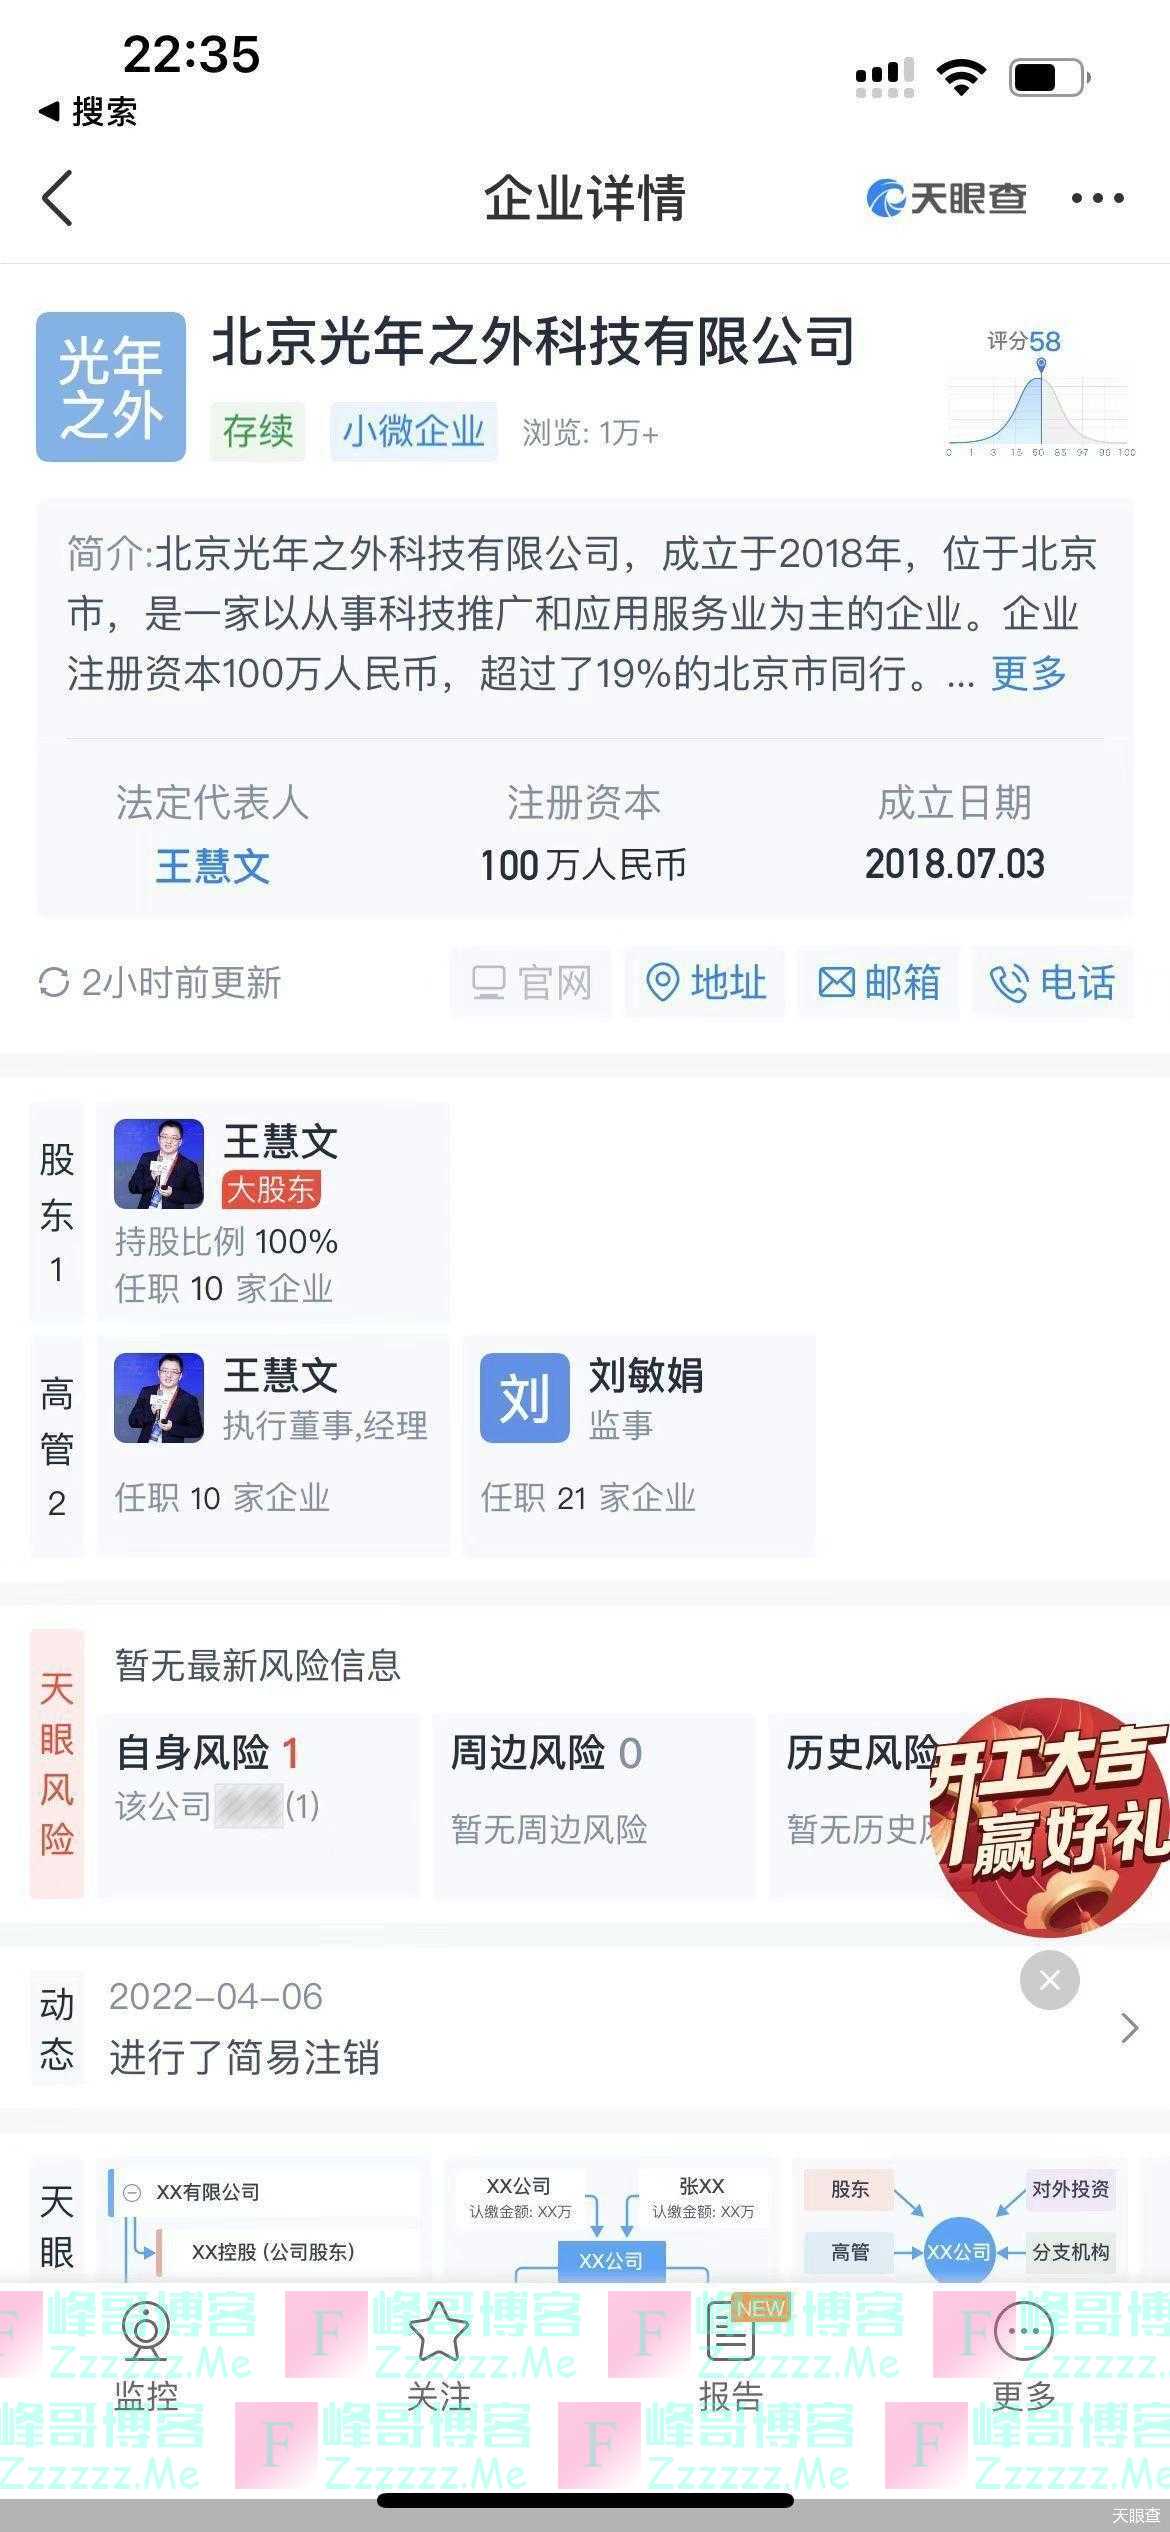 王慧文的AI创业与中国互联网的ChatGPT狂欢